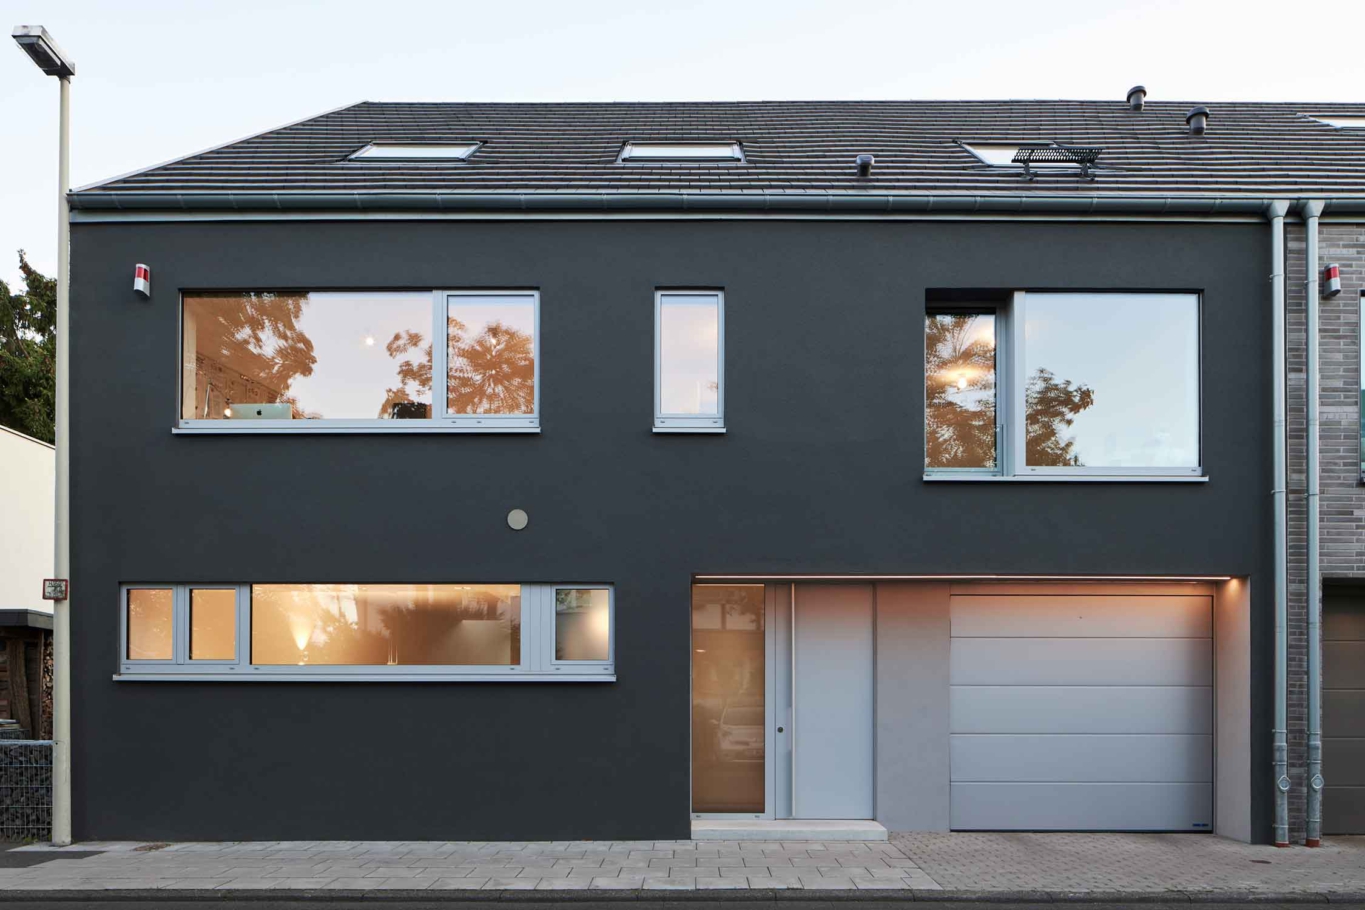 Architekturfotografie Lioba Schneider: Ein Doppeleinfamilienhaus in Bonn bei Dämmerung von der Strasse aus gesehen. Die Fassaden sind unterschiedlich gestaltet- anthrazitfarbener putz und einmal heller Klinker.